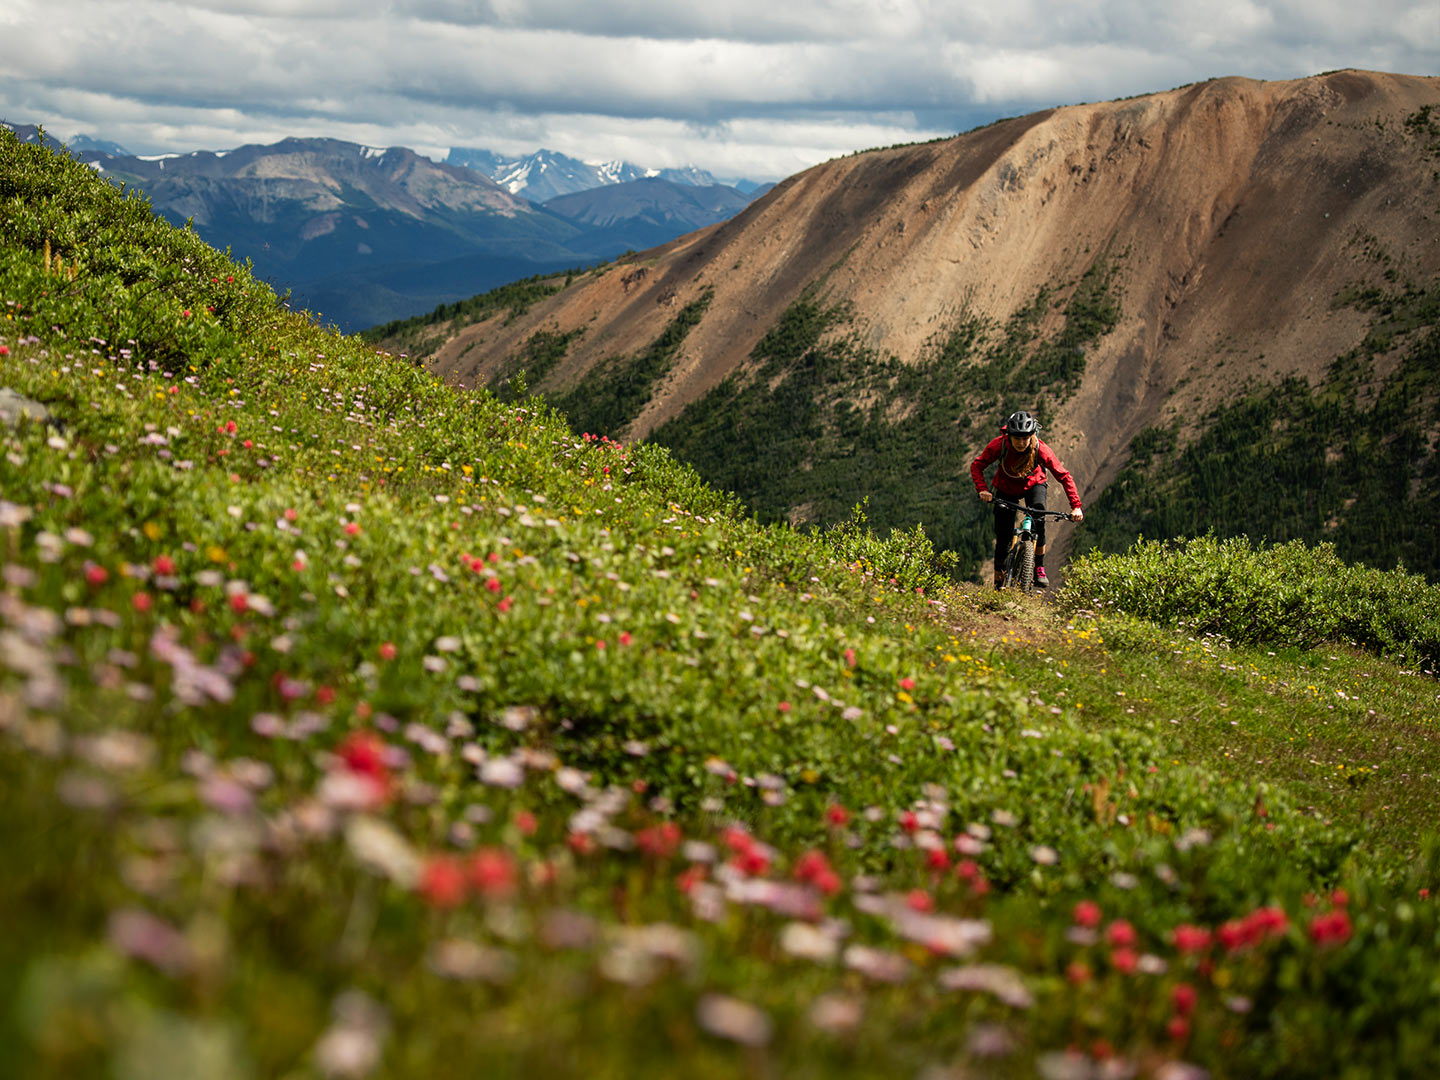 Ciclista ao longe a subir um trilho coberto por flores silvestres